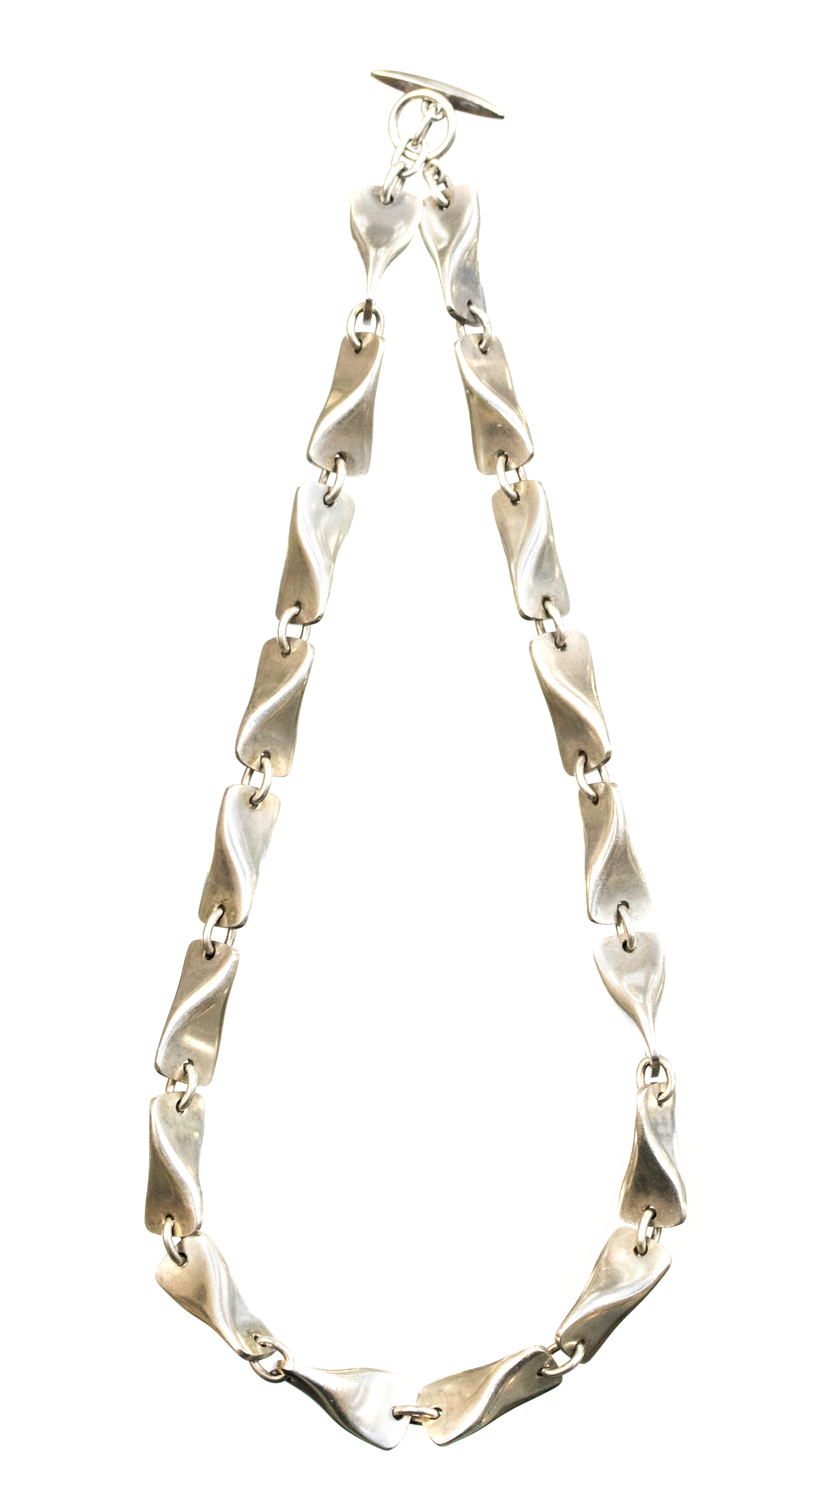 Edward Kindt Larsen for Georg Jensen, a Modernist Danish silver necklace, designed circa 1950,